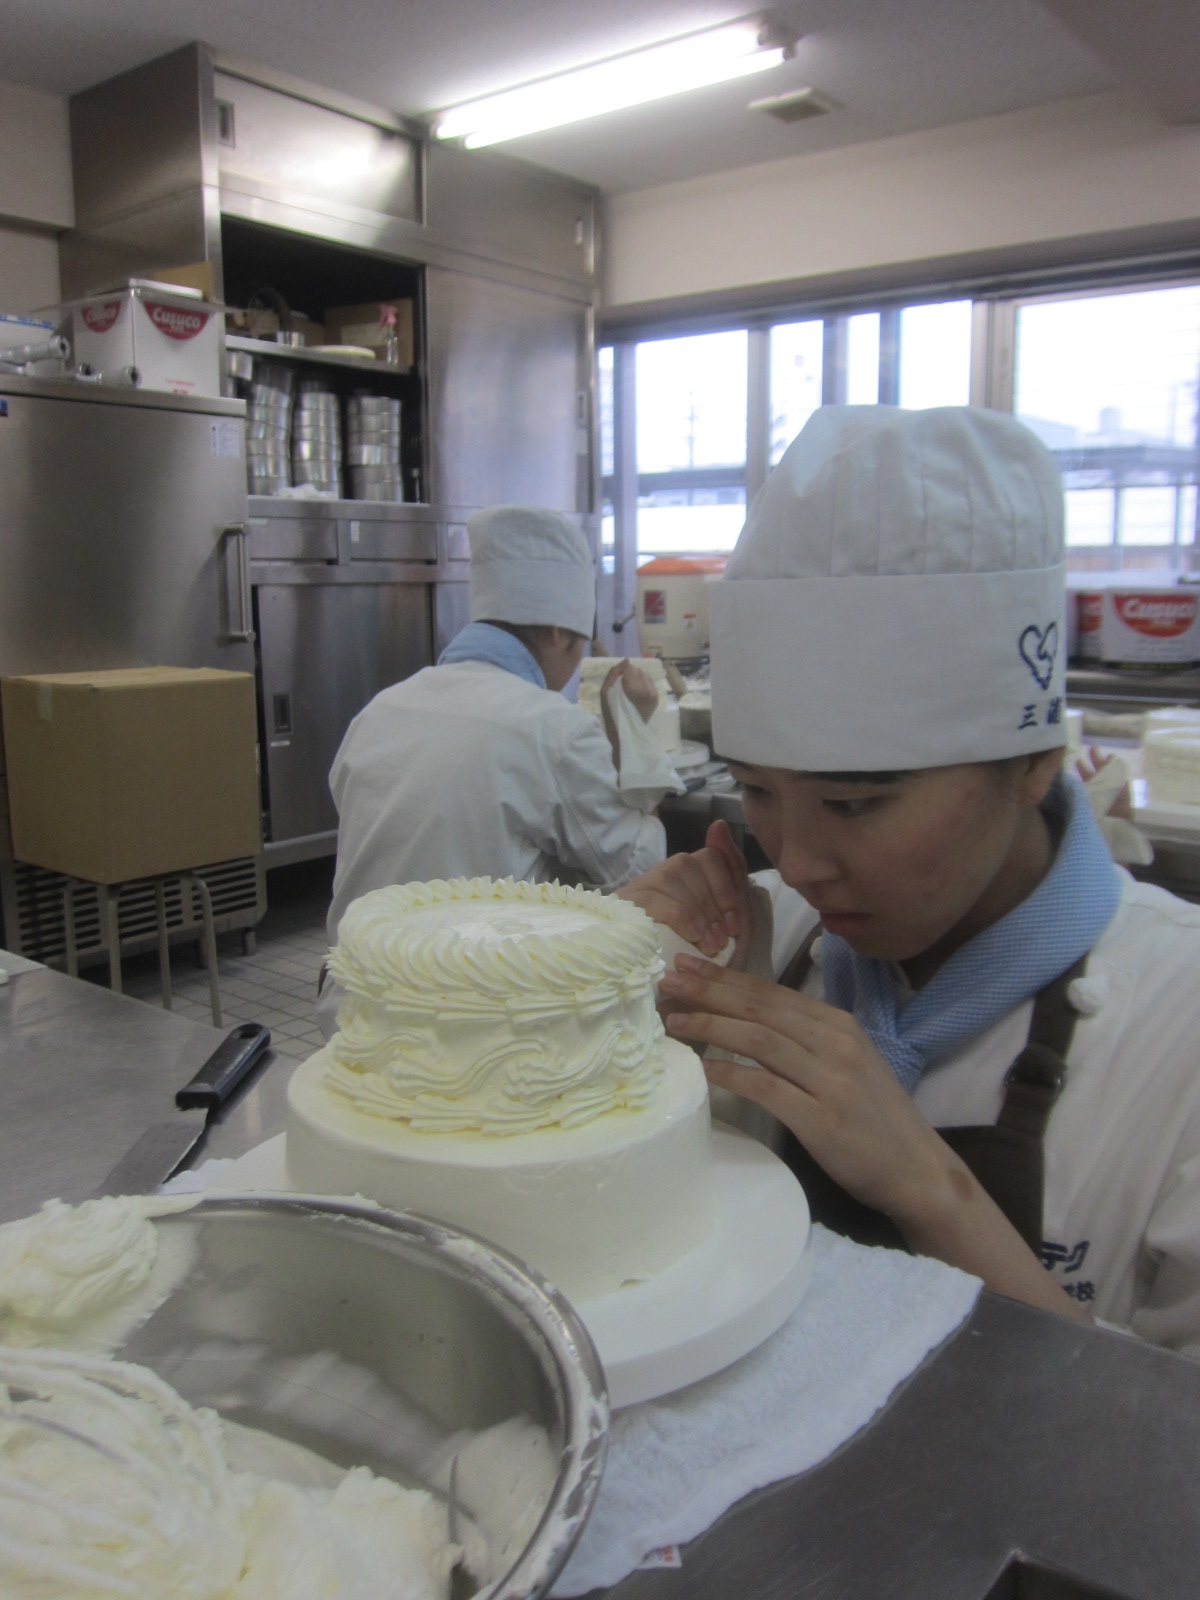 ウェディングケーキ実習 製菓製パン総合学科２年生 ユマニテク調理製菓専門学校